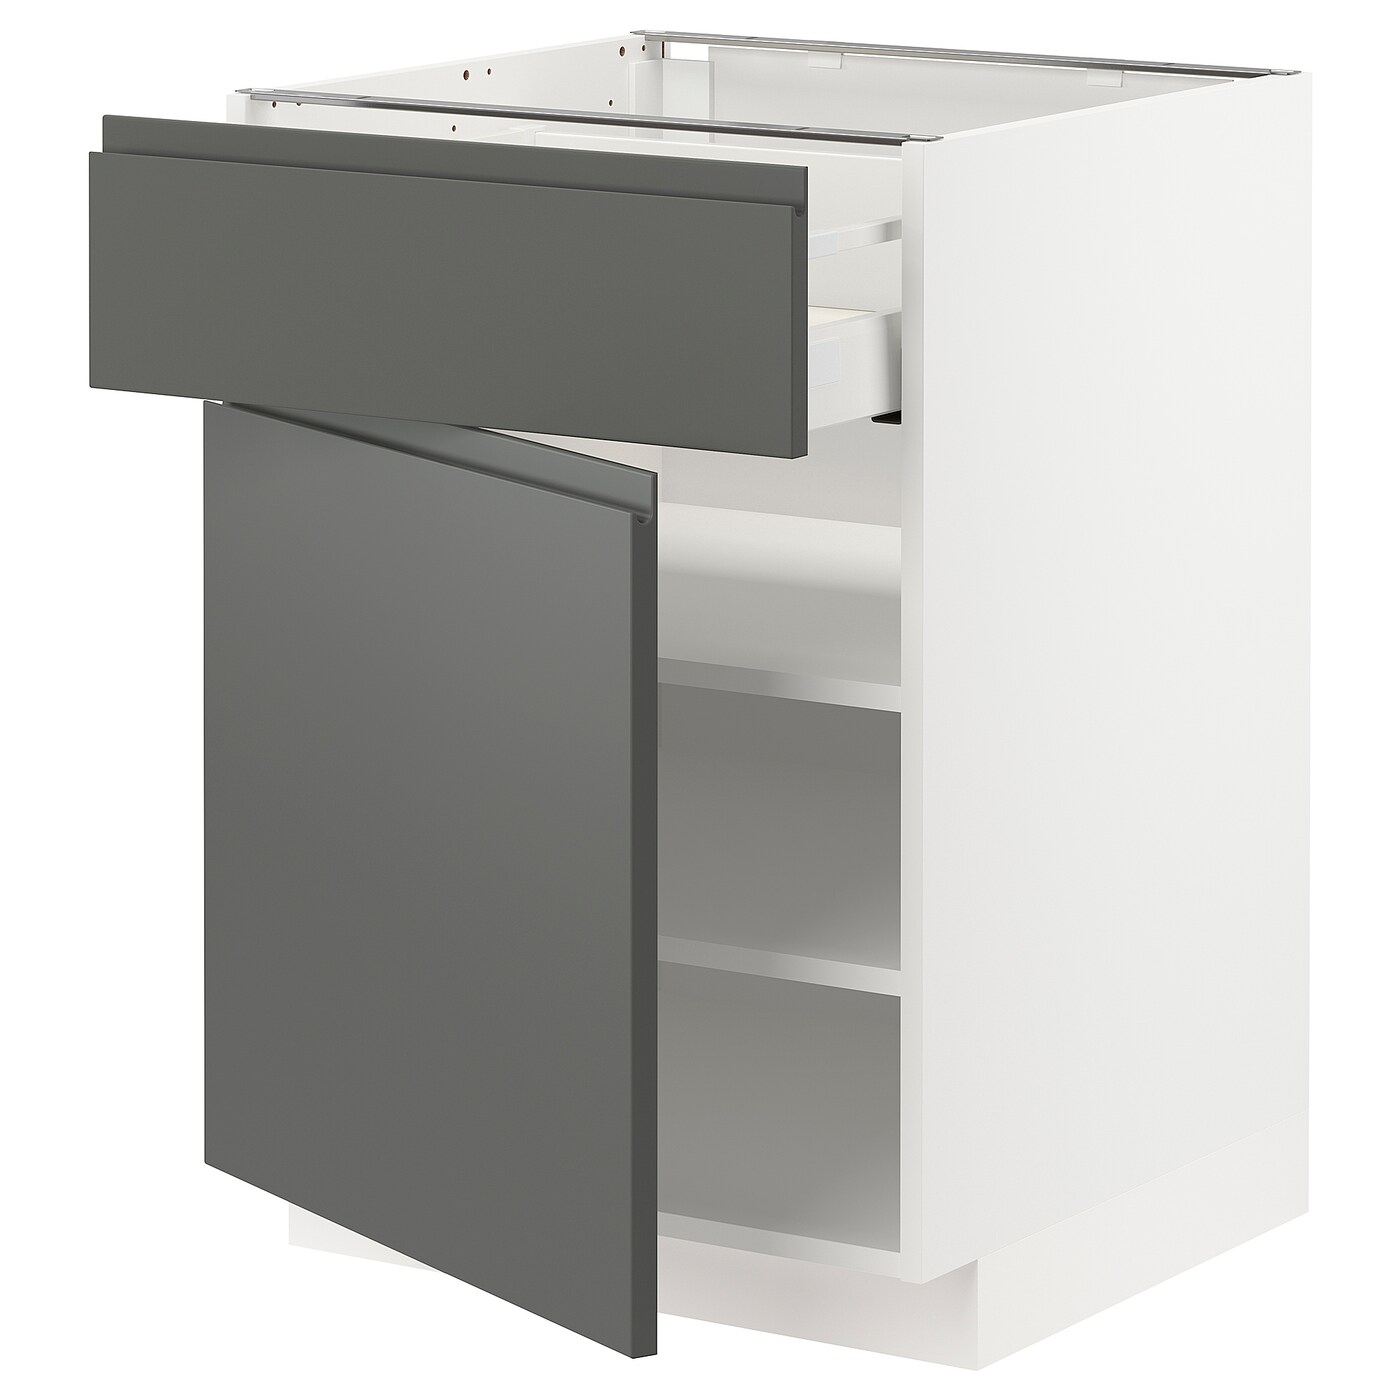 Напольный шкаф - IKEA METOD MAXIMERA, 88x62x60см, белый/темно-серый, МЕТОД МАКСИМЕРА ИКЕА